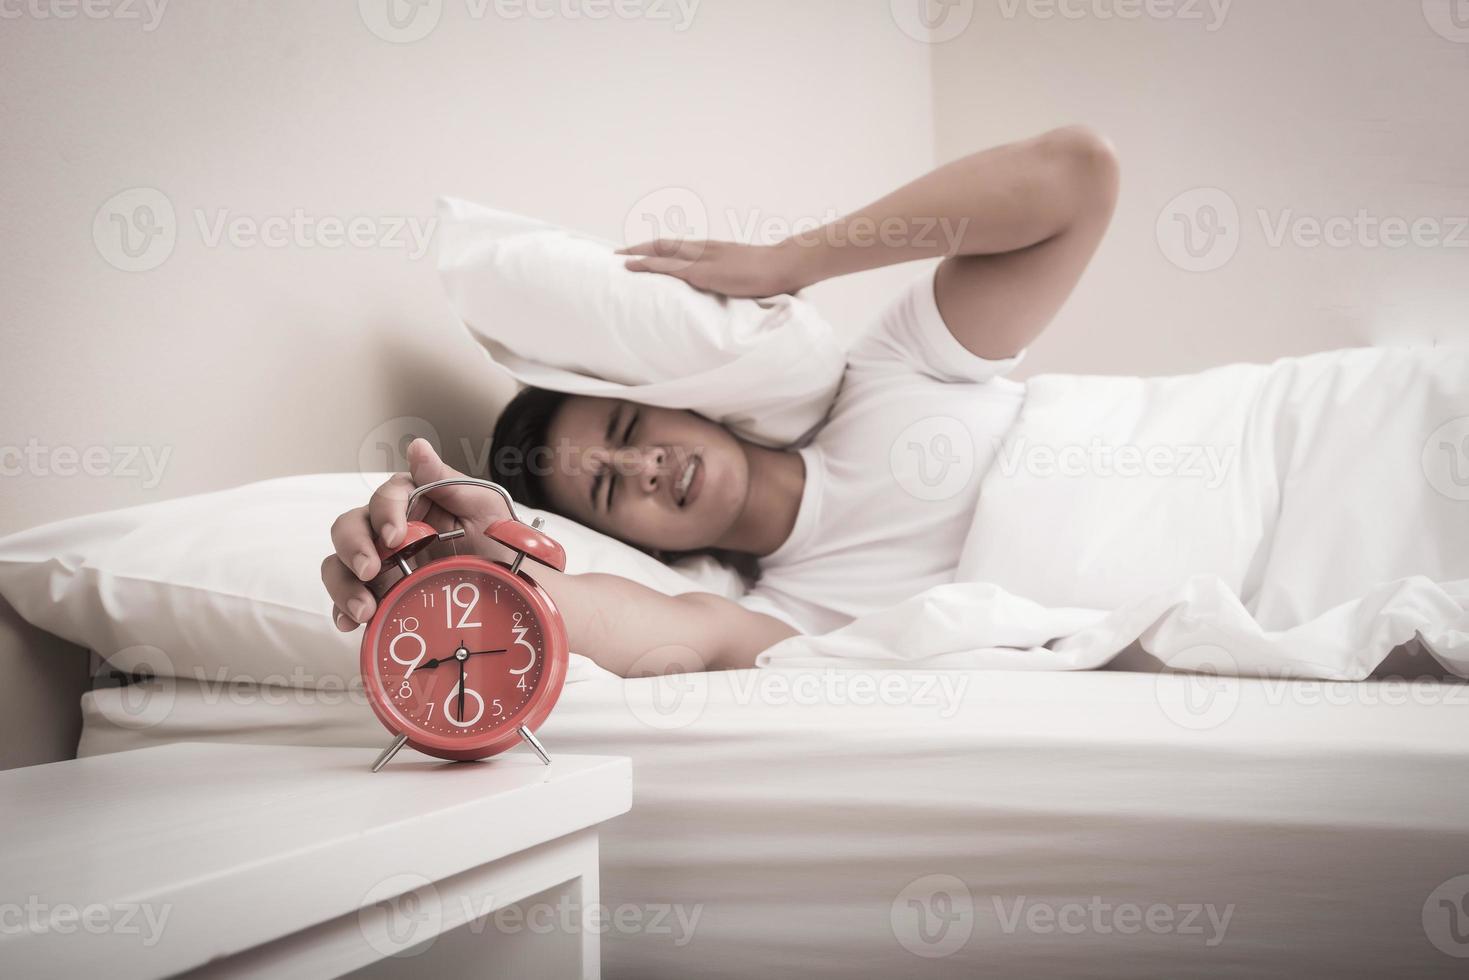 homem desliga o despertador pela manhã foto